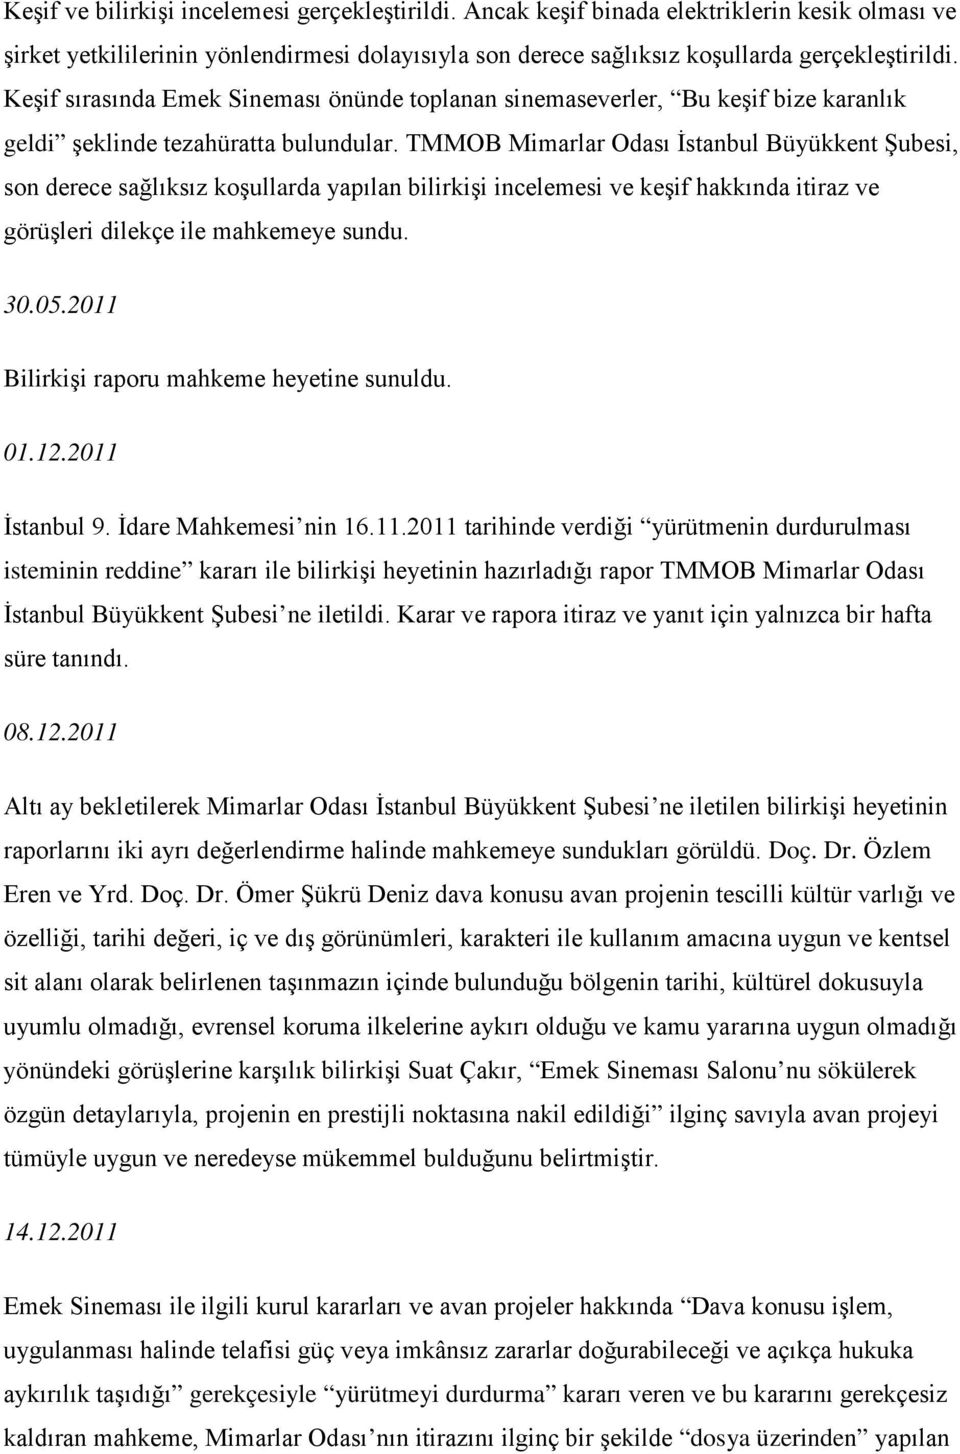 TMMOB Mimarlar Odası İstanbul Büyükkent Şubesi, son derece sağlıksız koşullarda yapılan bilirkişi incelemesi ve keşif hakkında itiraz ve görüşleri dilekçe ile mahkemeye sundu. 30.05.